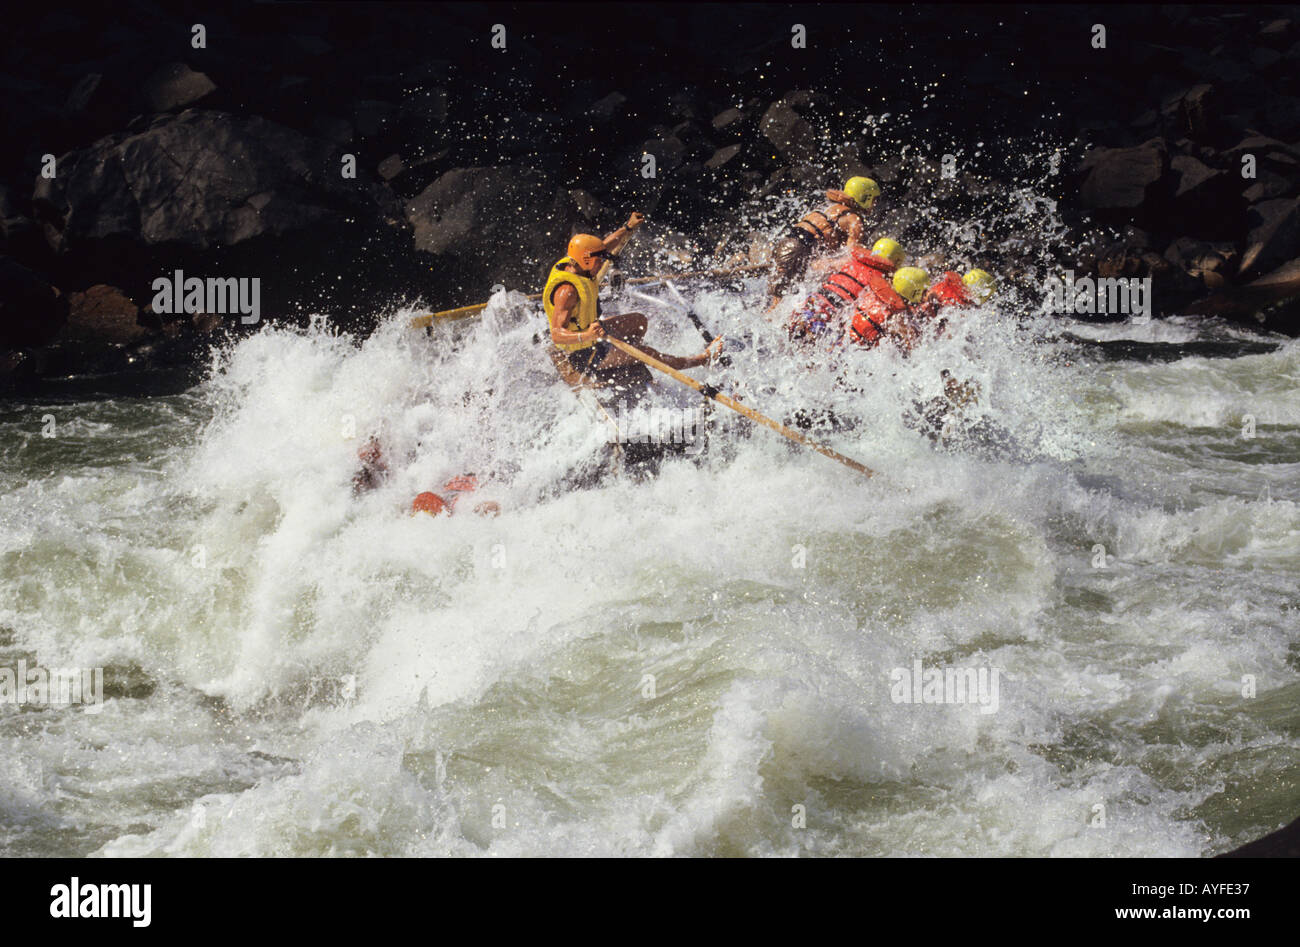 Wildwasser-rafting Zambezi River Simbabwe Sambia Grenze Afrika Stockfoto